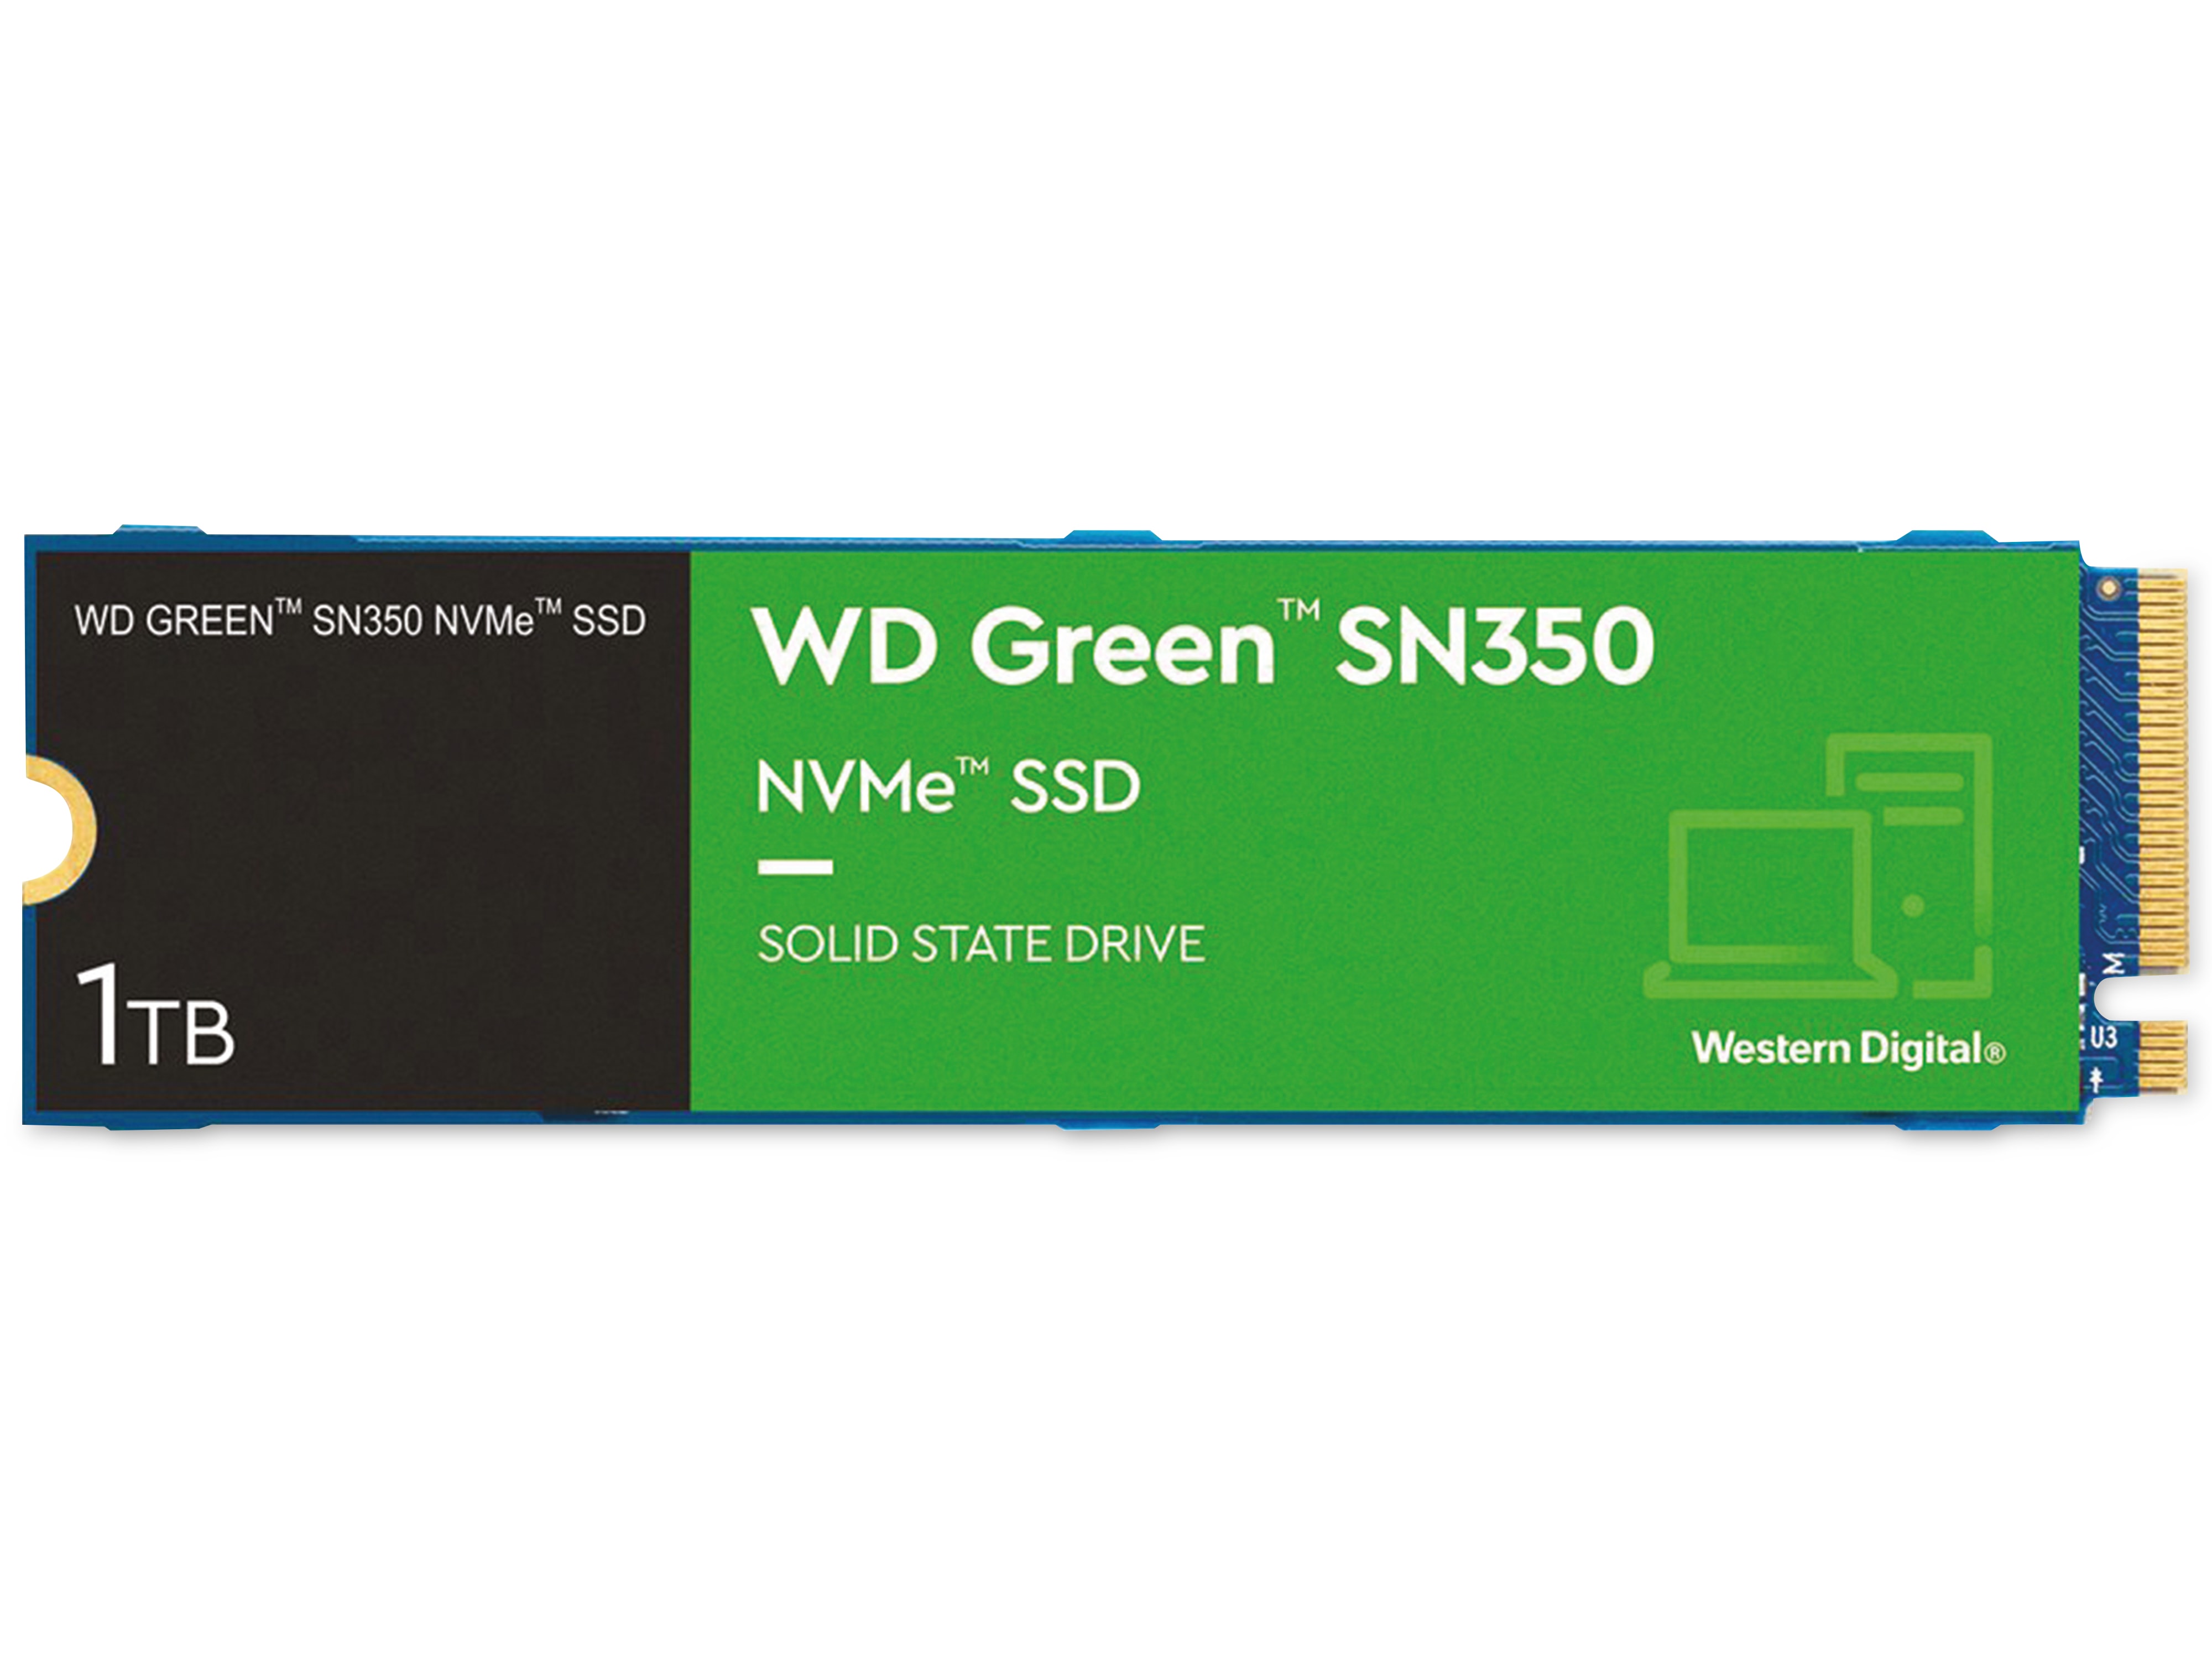 WESTERN DIGITAL M.2 SSD WD Green SN350, 1 TB, NVMe, intern